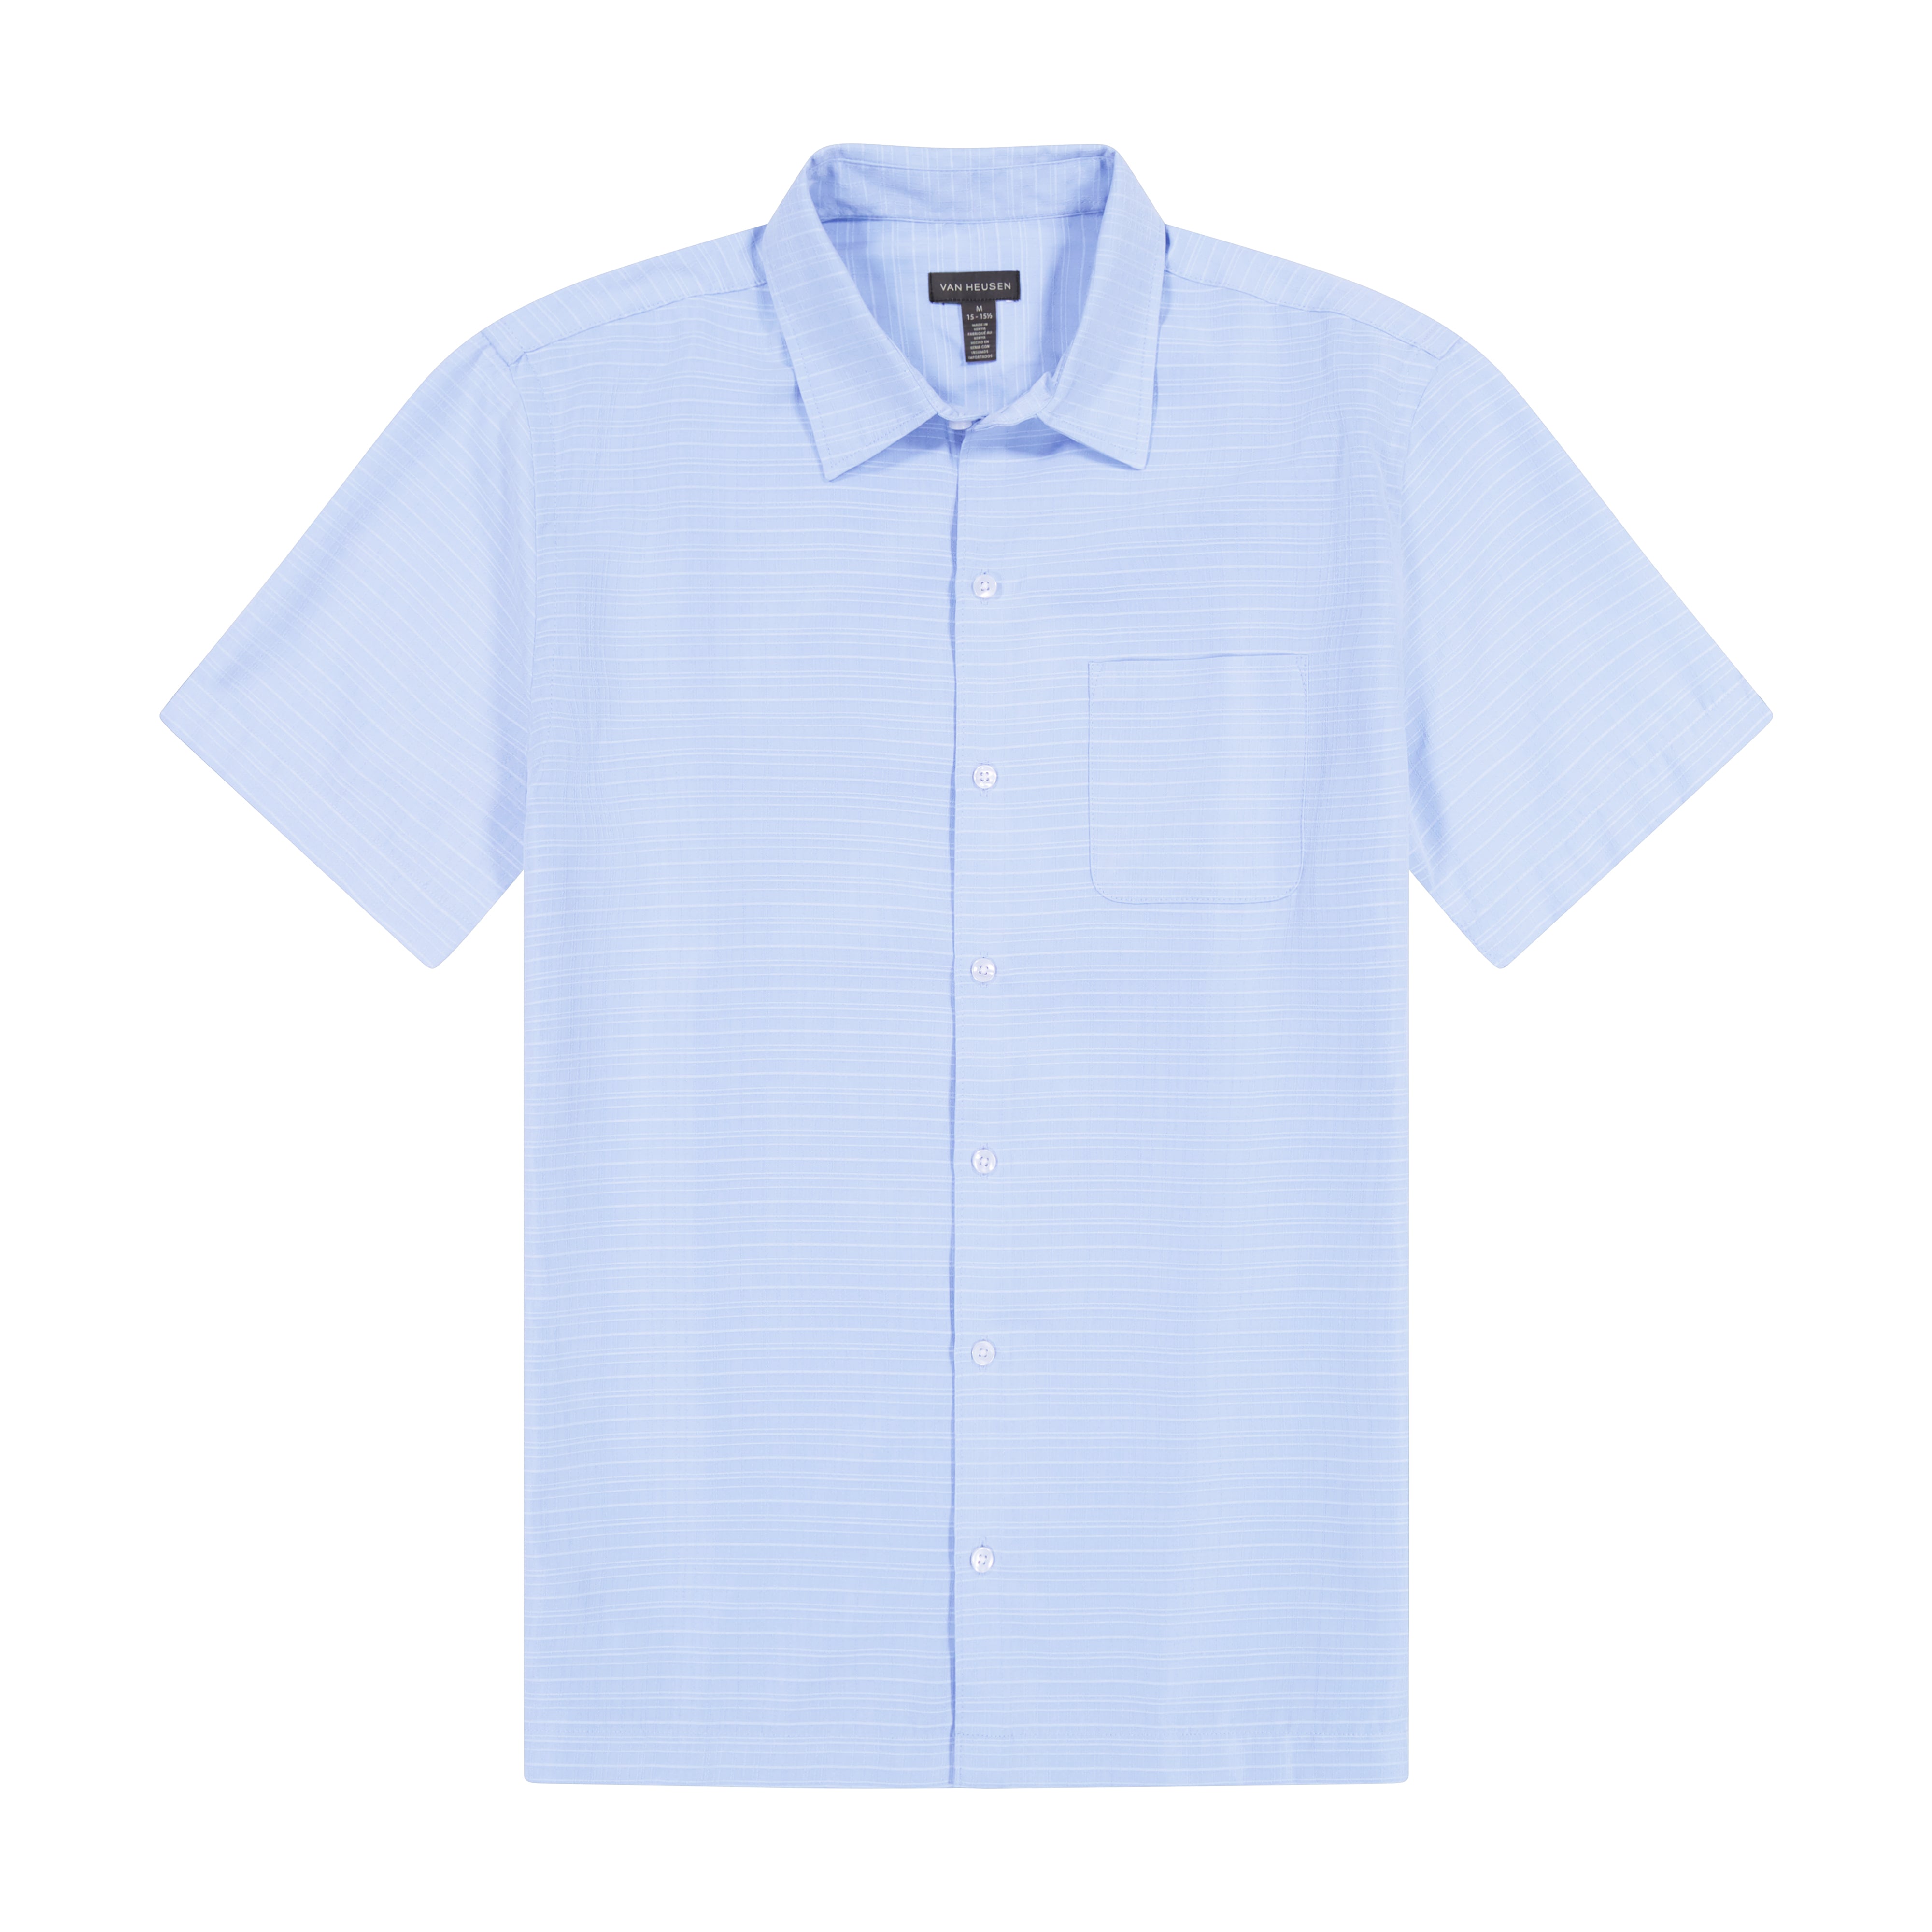 Weekend Cross Dye Texture Plaid Short Sleeve Shirt - Regular Fit